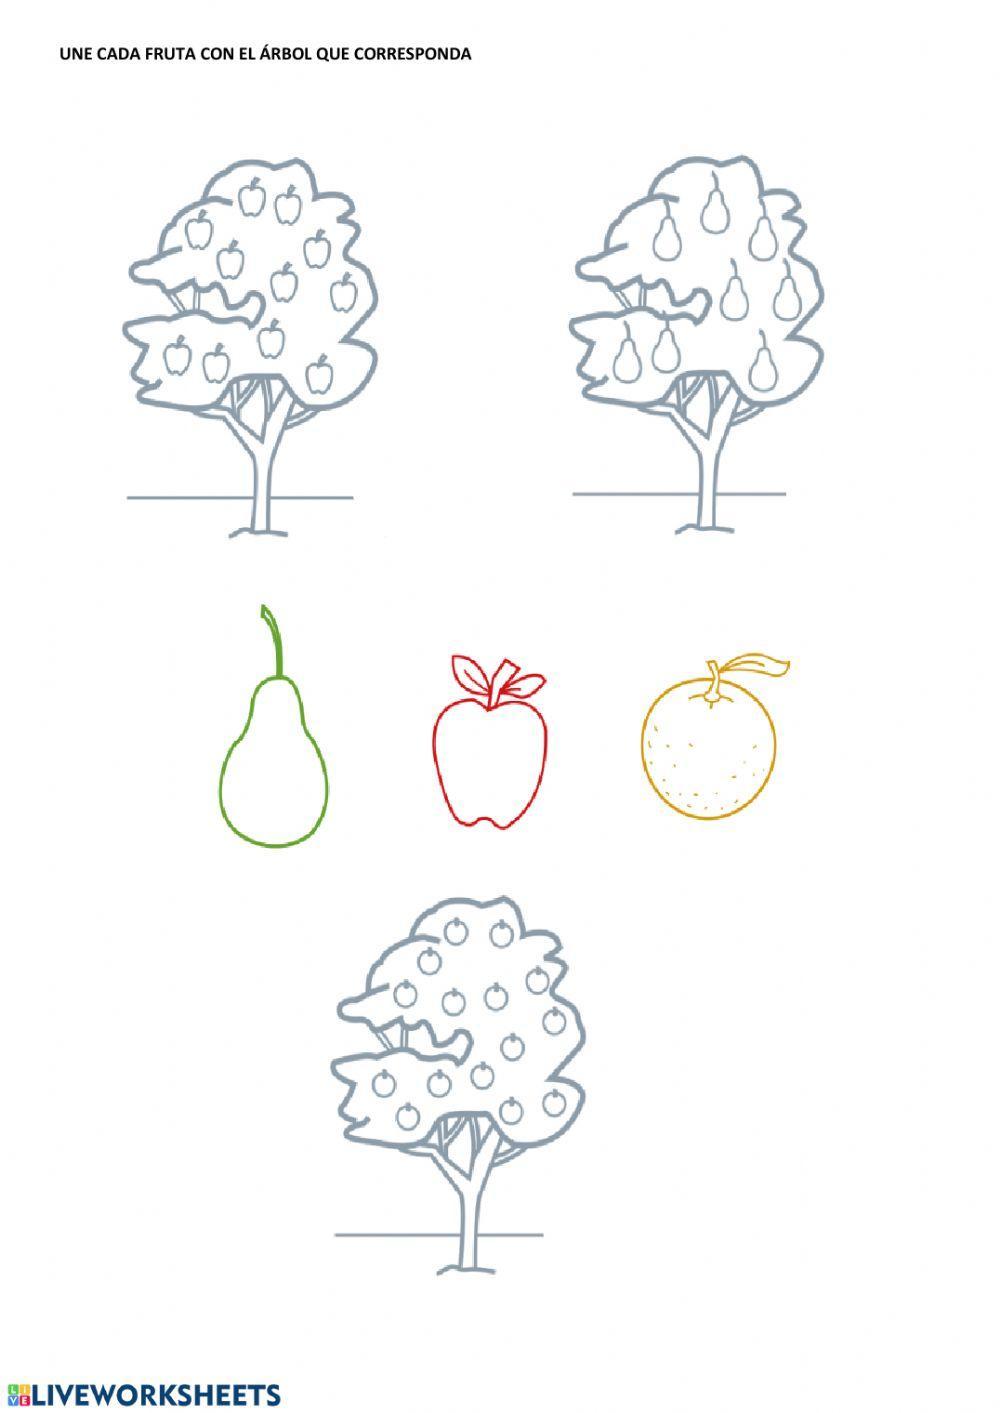 Árboles y frutas